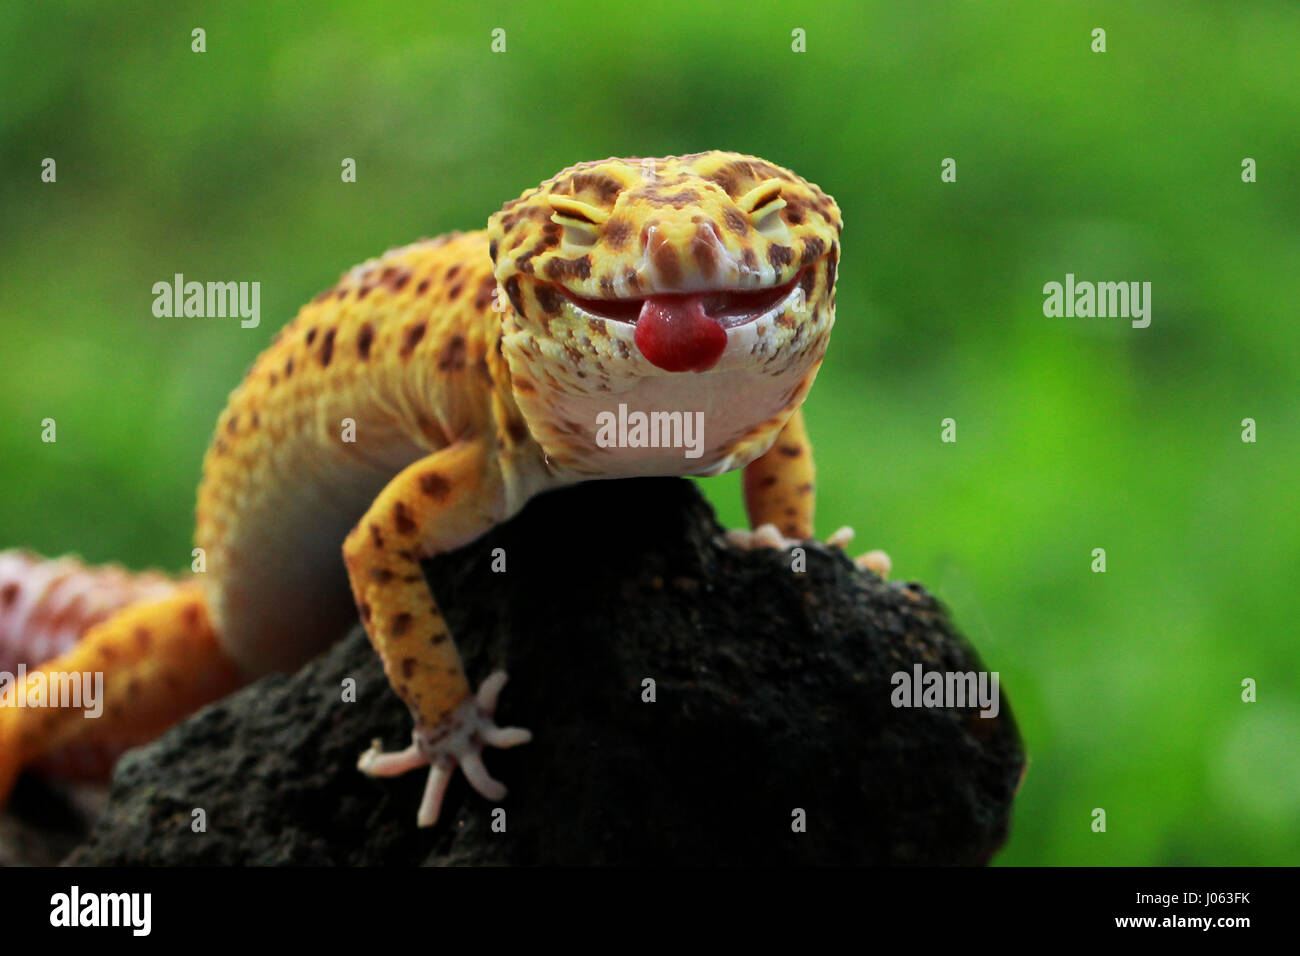 Un Leopard gecko bastoni la lingua fuori per la fotocamera. CHEEKY foto di un grippaggio gecko la lingua fuori come si soffia un lampone presso un fotografo sorpreso è stato catturato. I divertenti riprese mostrano un Leopard gecko appollaiate sul bordo di una succursale a occhi chiusi e la lingua di fuori. Altri close-up foto nella serie mostrano una telecamera timido Tokay gecko inserimenti della testa fuori da dietro un tronco di albero. Un'altra immagine mostra il luminoso blu e arancione tirando la creatura stessa su un registro con la sua bocca aperta. Gli esilaranti le foto sono state scattate da pensionato indonesiano Mang giorno (62) utilizzando una Canon 60D cam Foto Stock